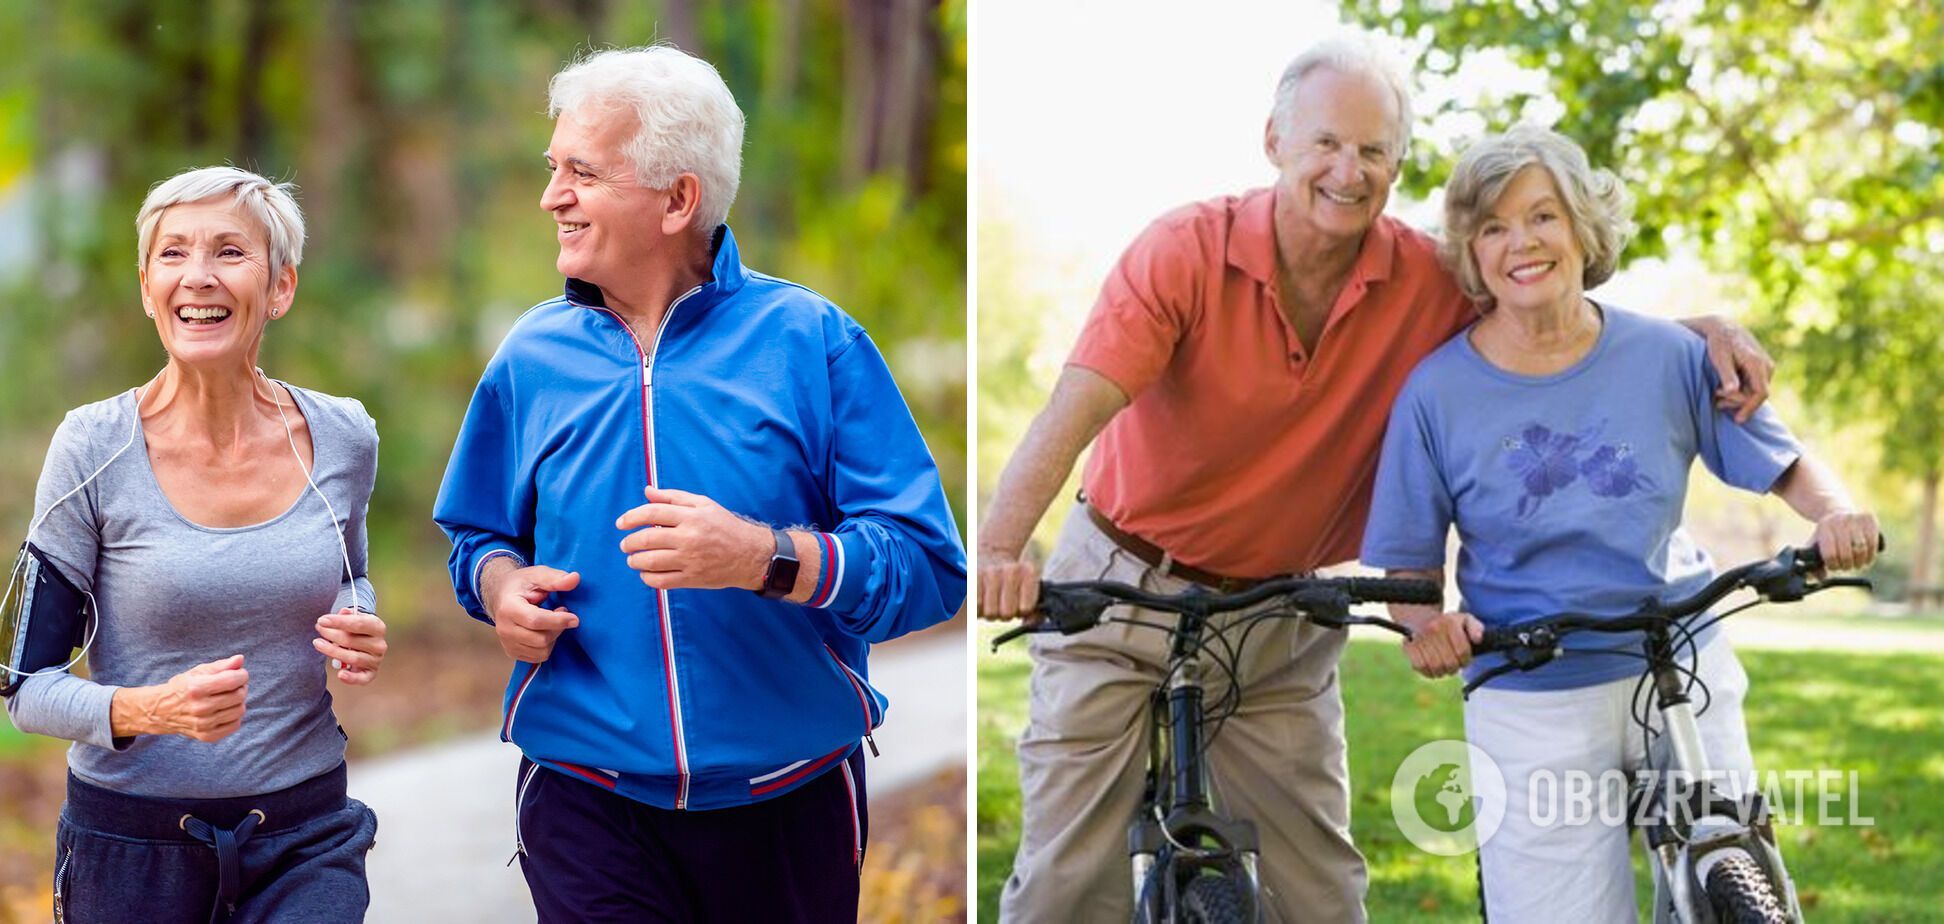 Активная физическая деятельность хотя бы раз в неделю помогает предотвратить хроническую мышечно-скелетную боль в долгосрочной перспективе.